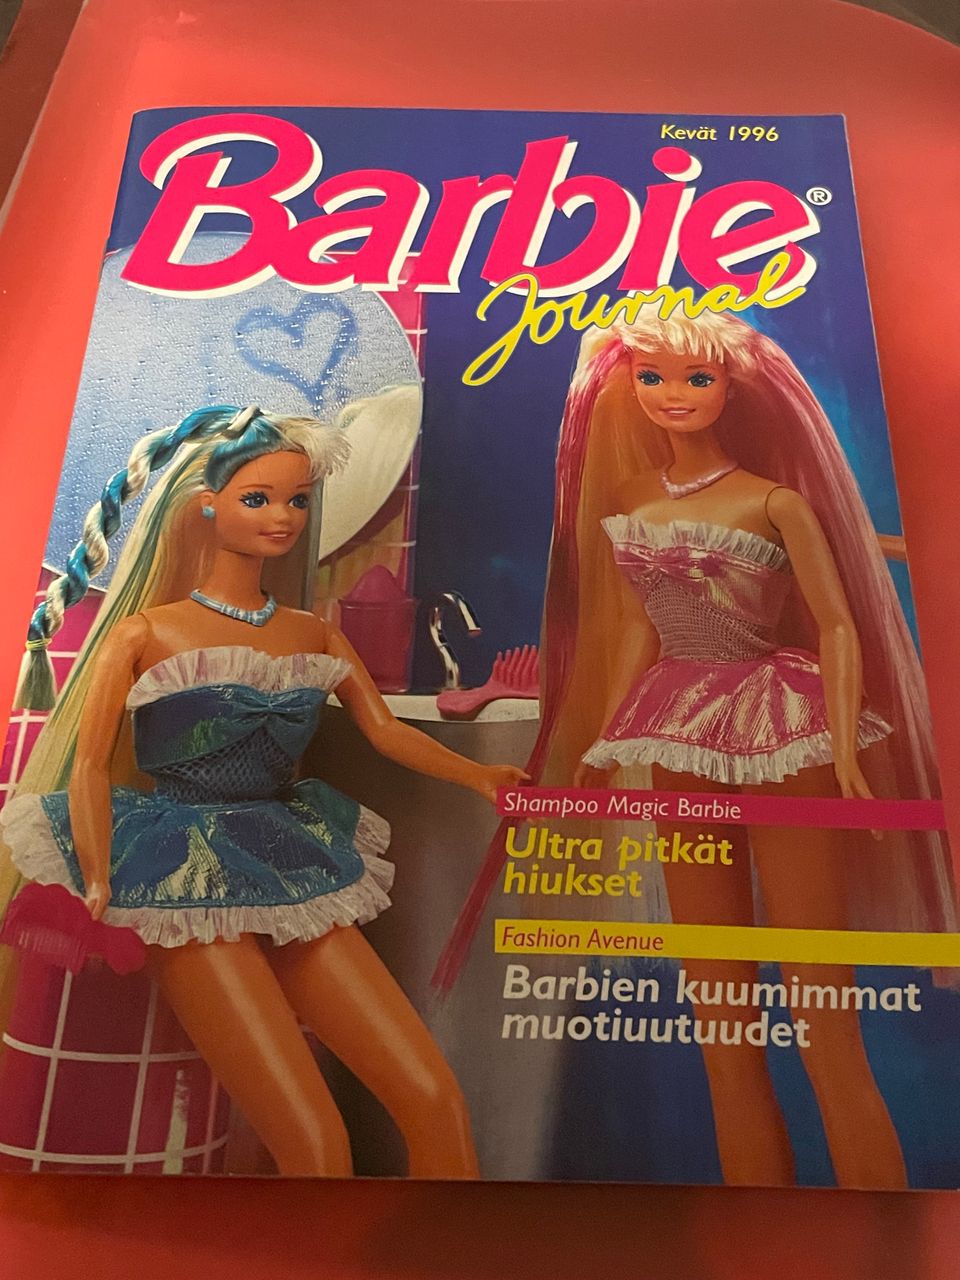 Barbie journal lehtikuvasto vintage 1996